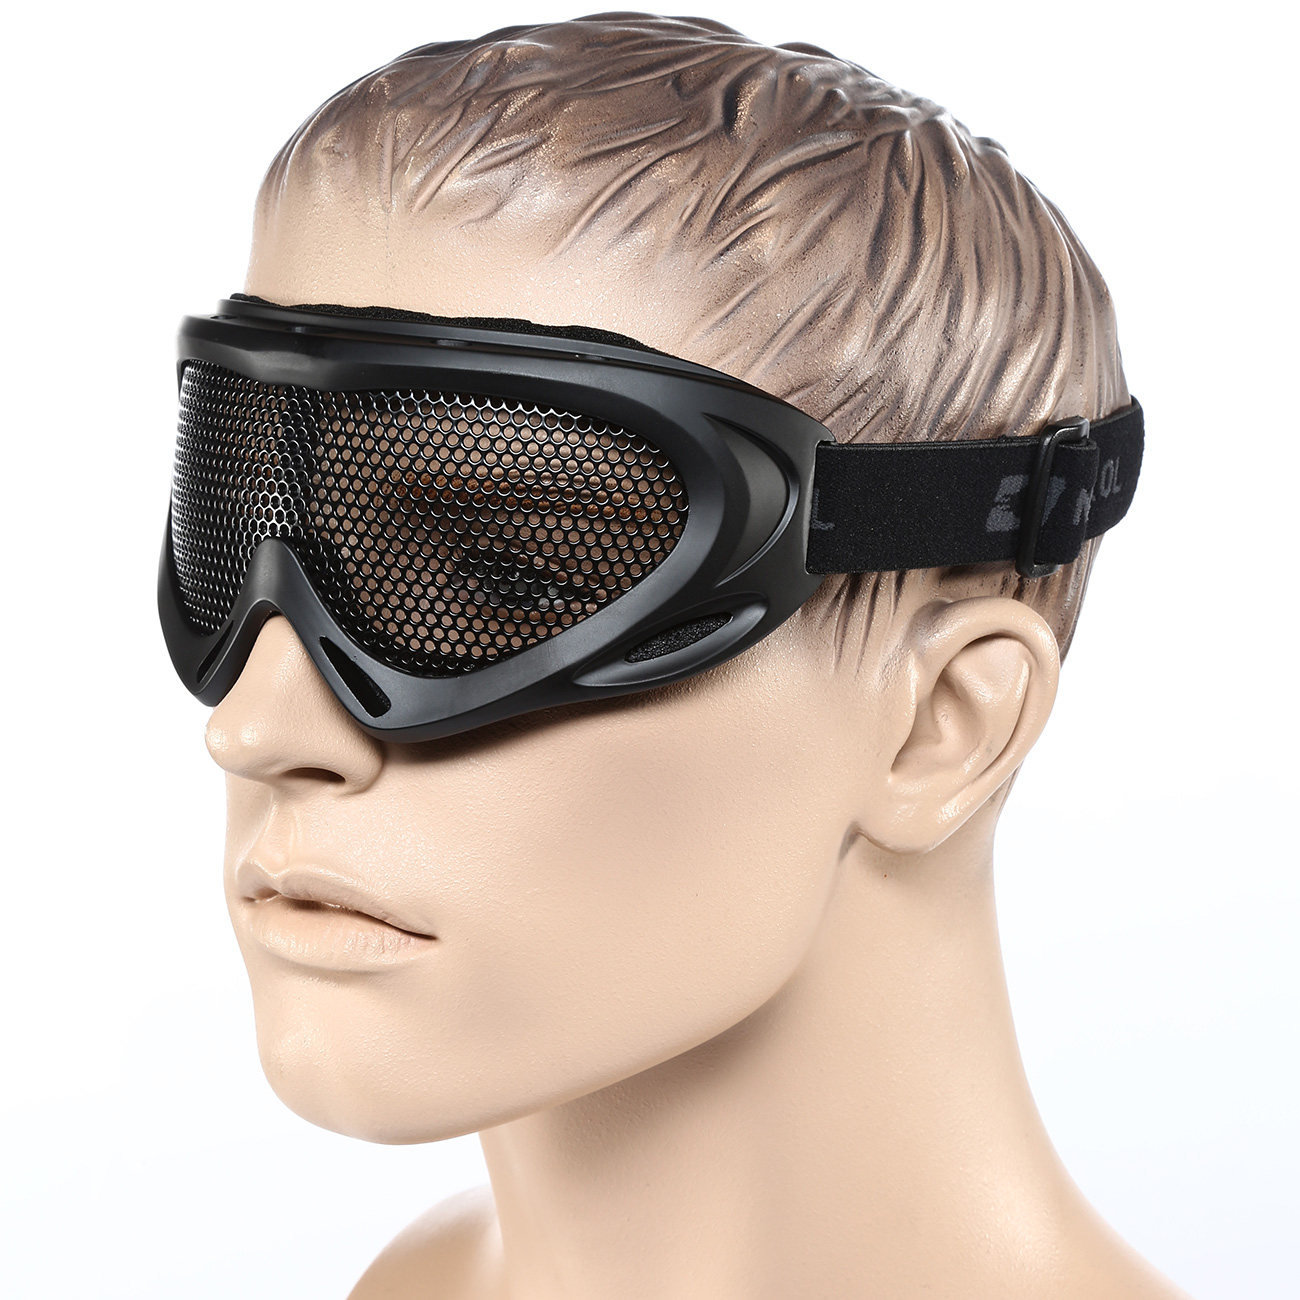 Nuprol Brille Pro Mesh Eye Protection Airsoft Gitterbrille schwarz Bild 3